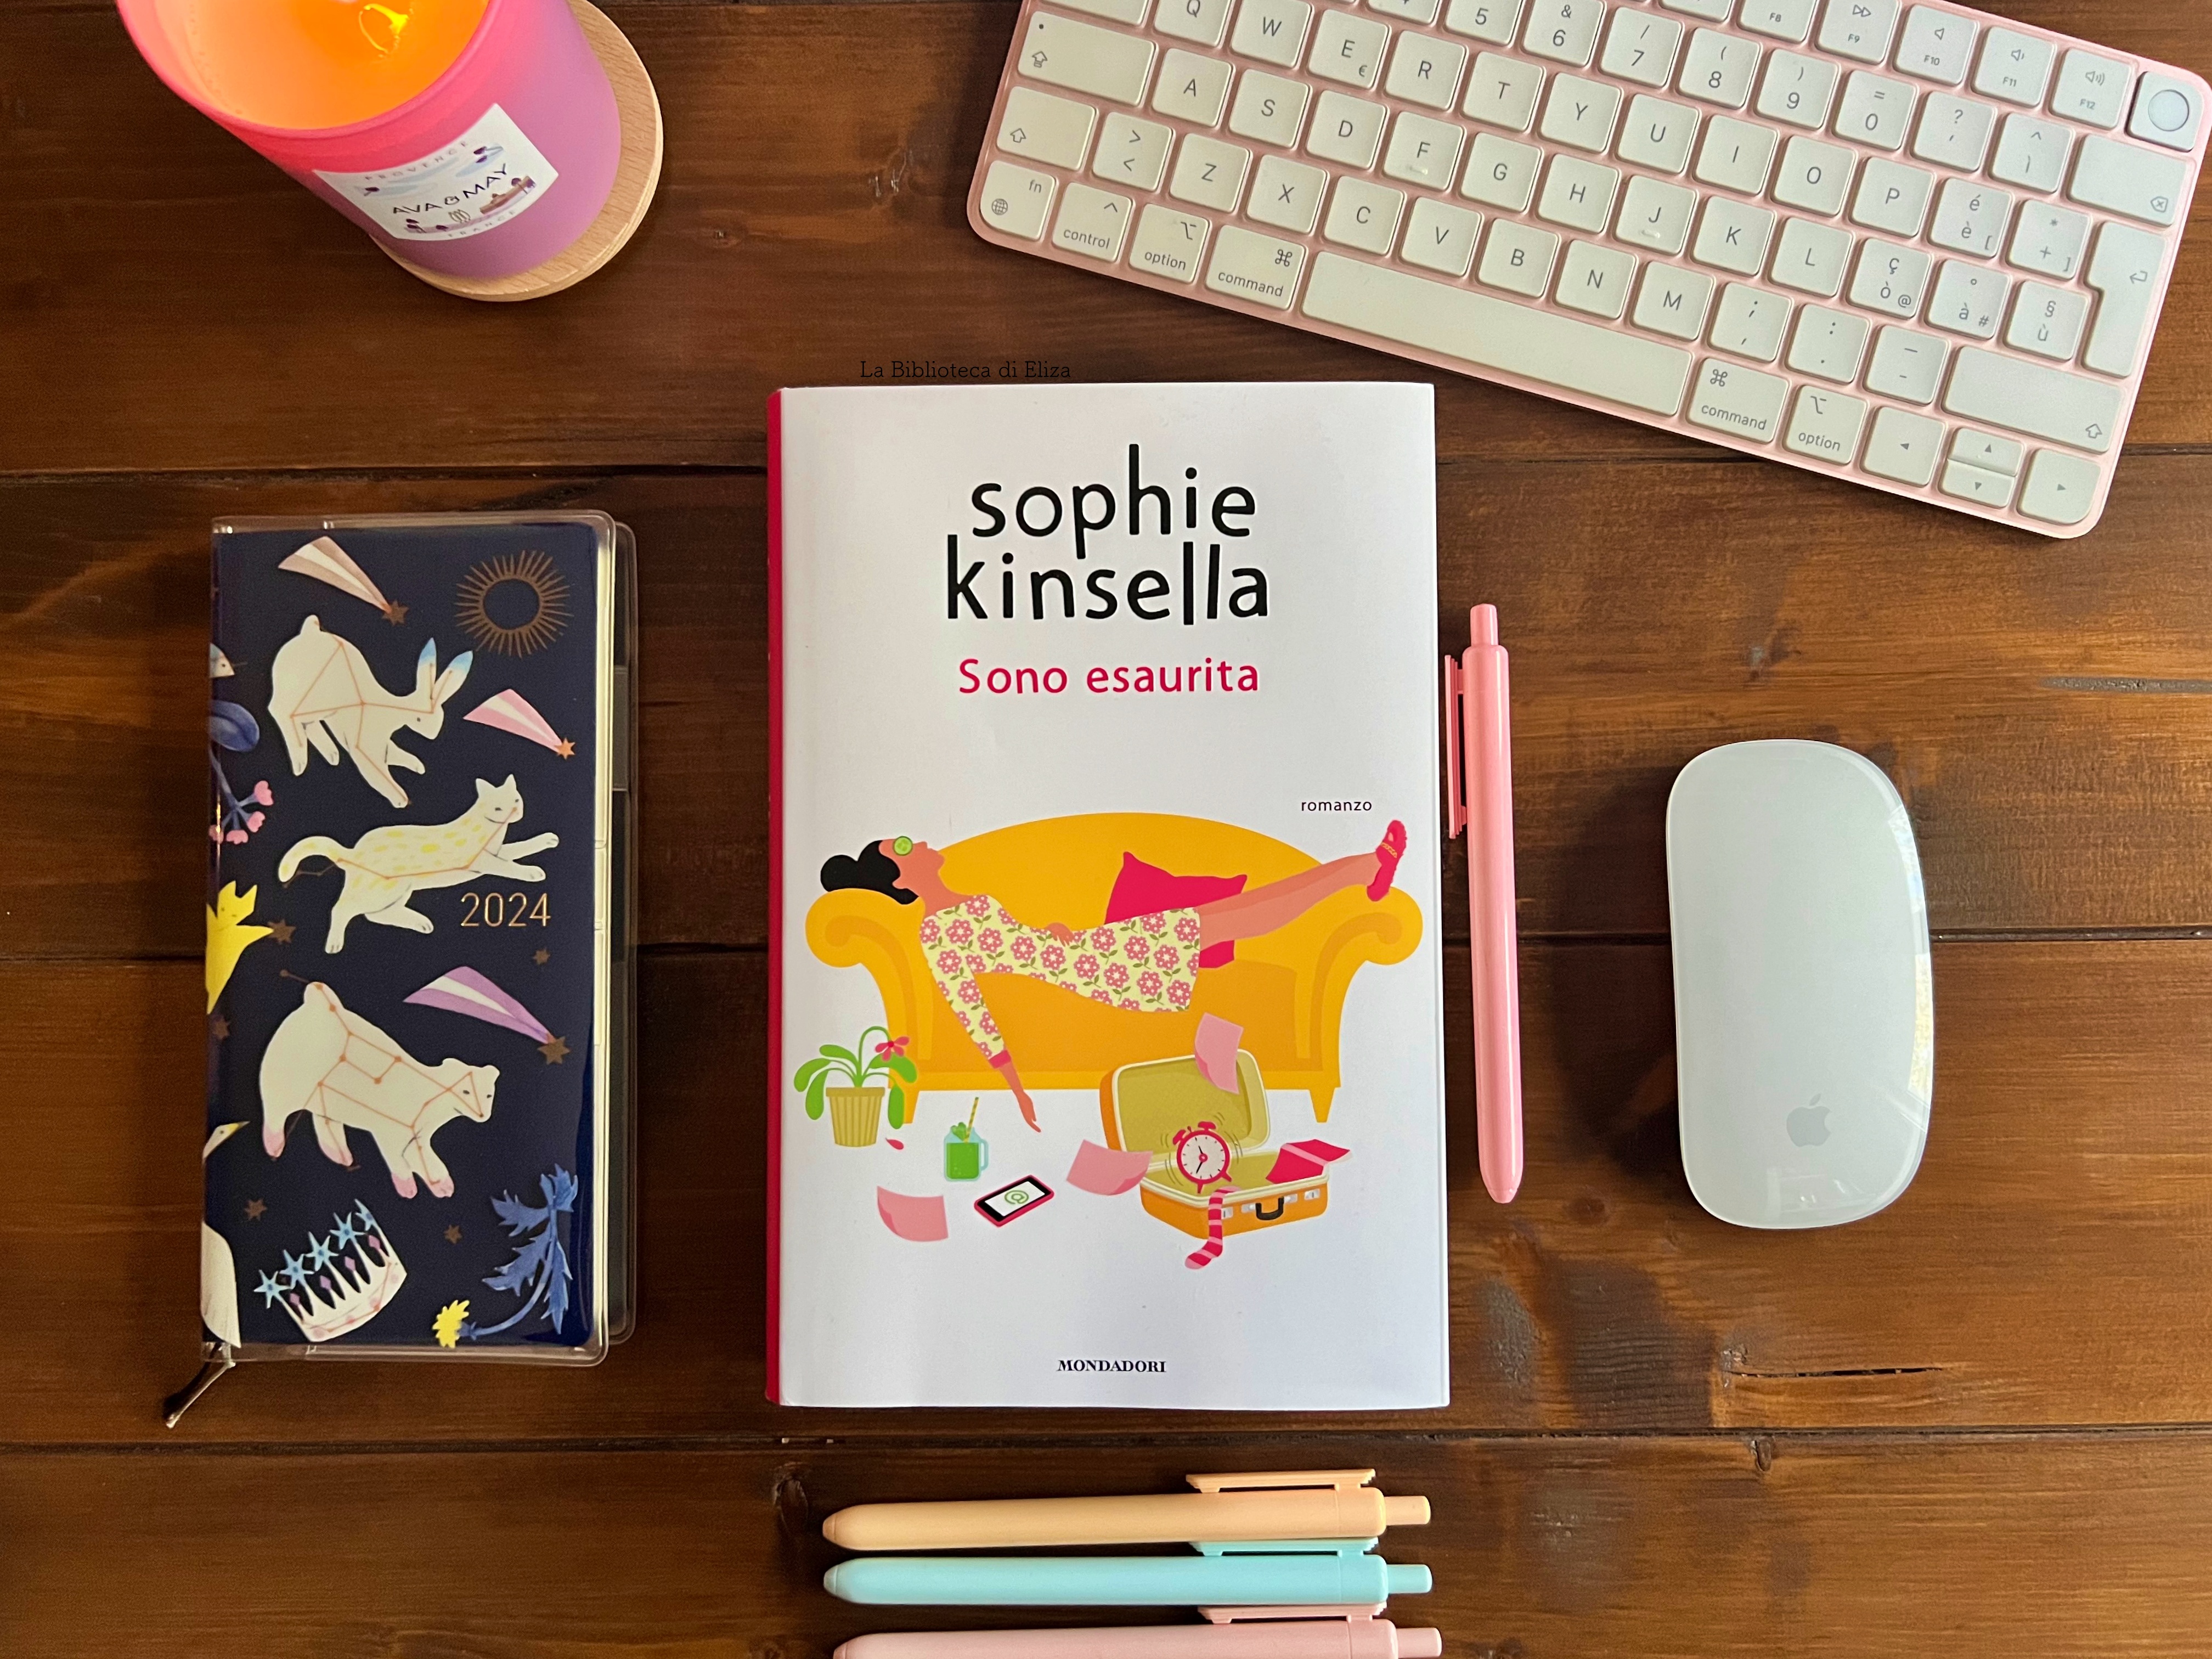 Segnalazione: Sono esaurita di Sophie Kinsella, Mondadori 